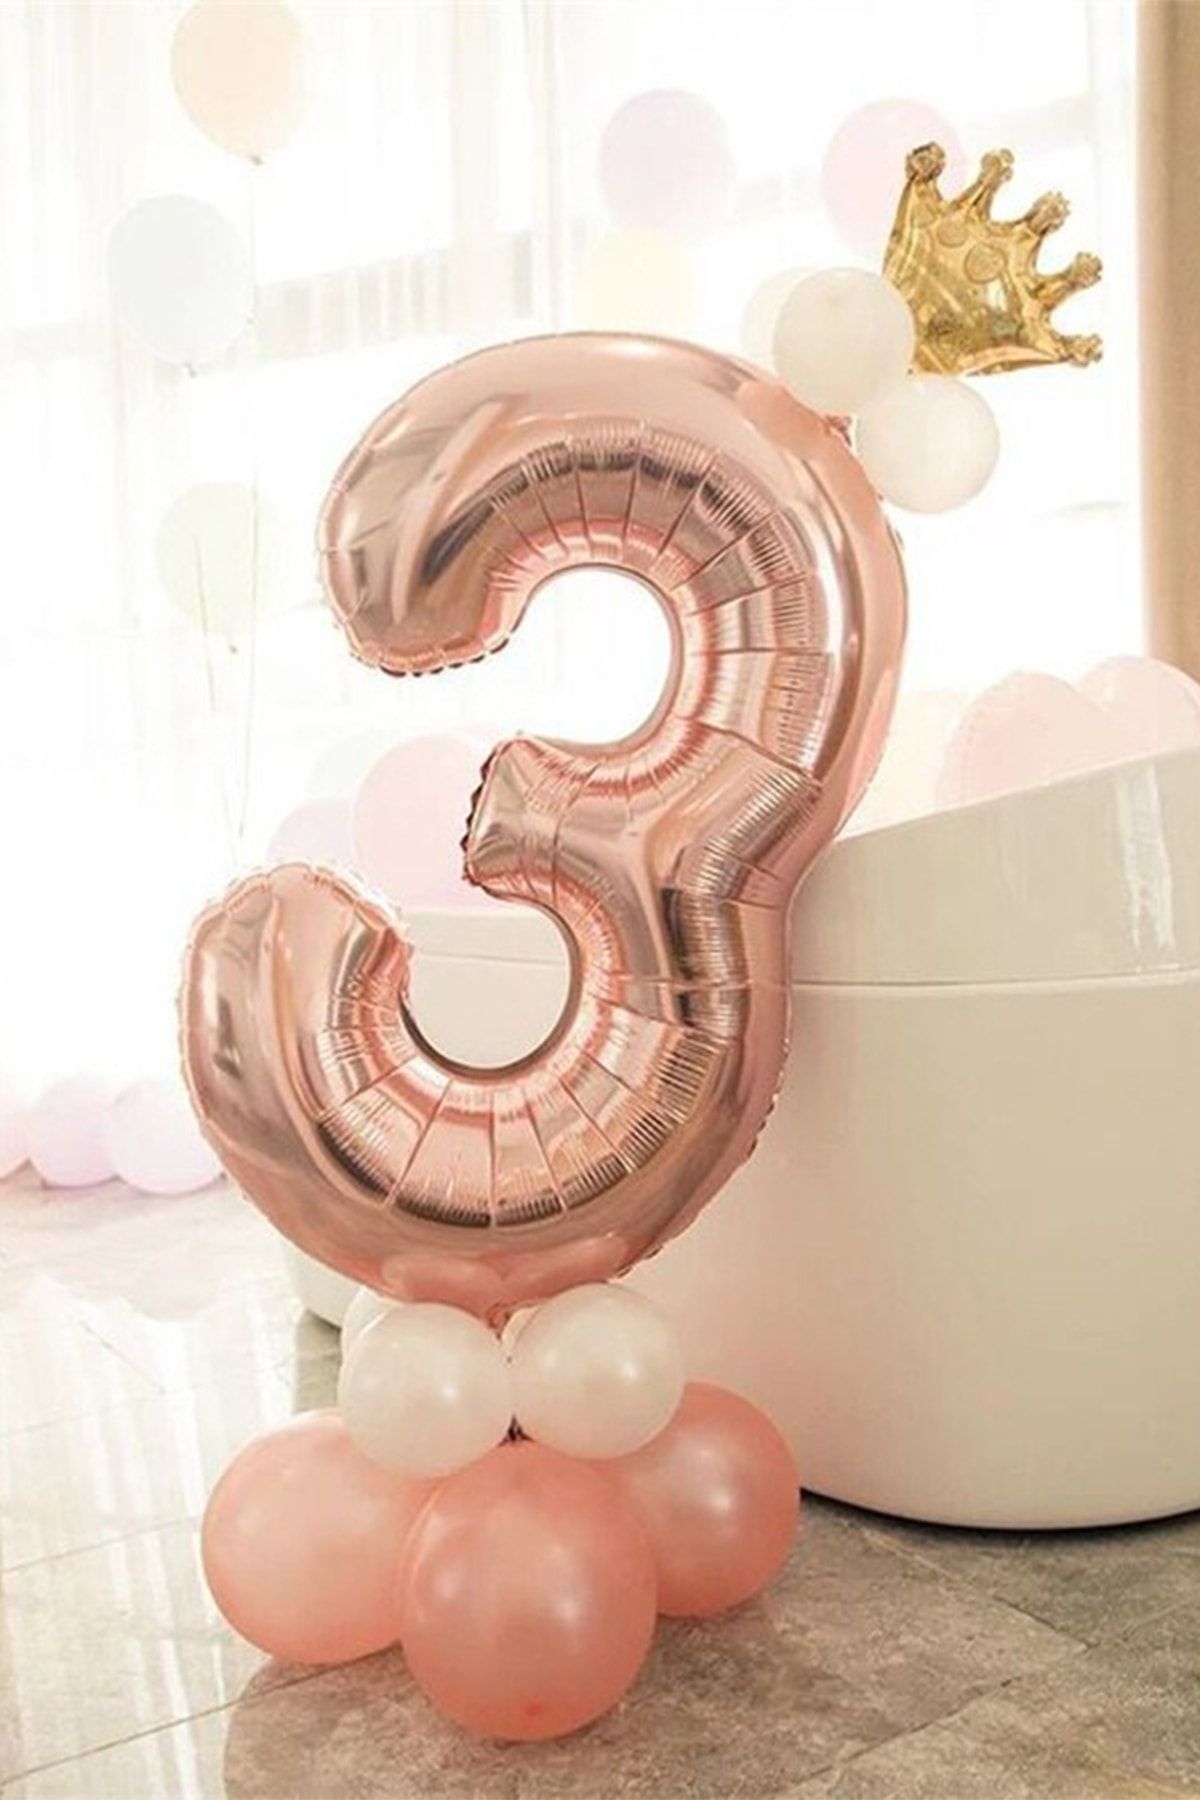 красивые шары на день рождения девочке 2 года